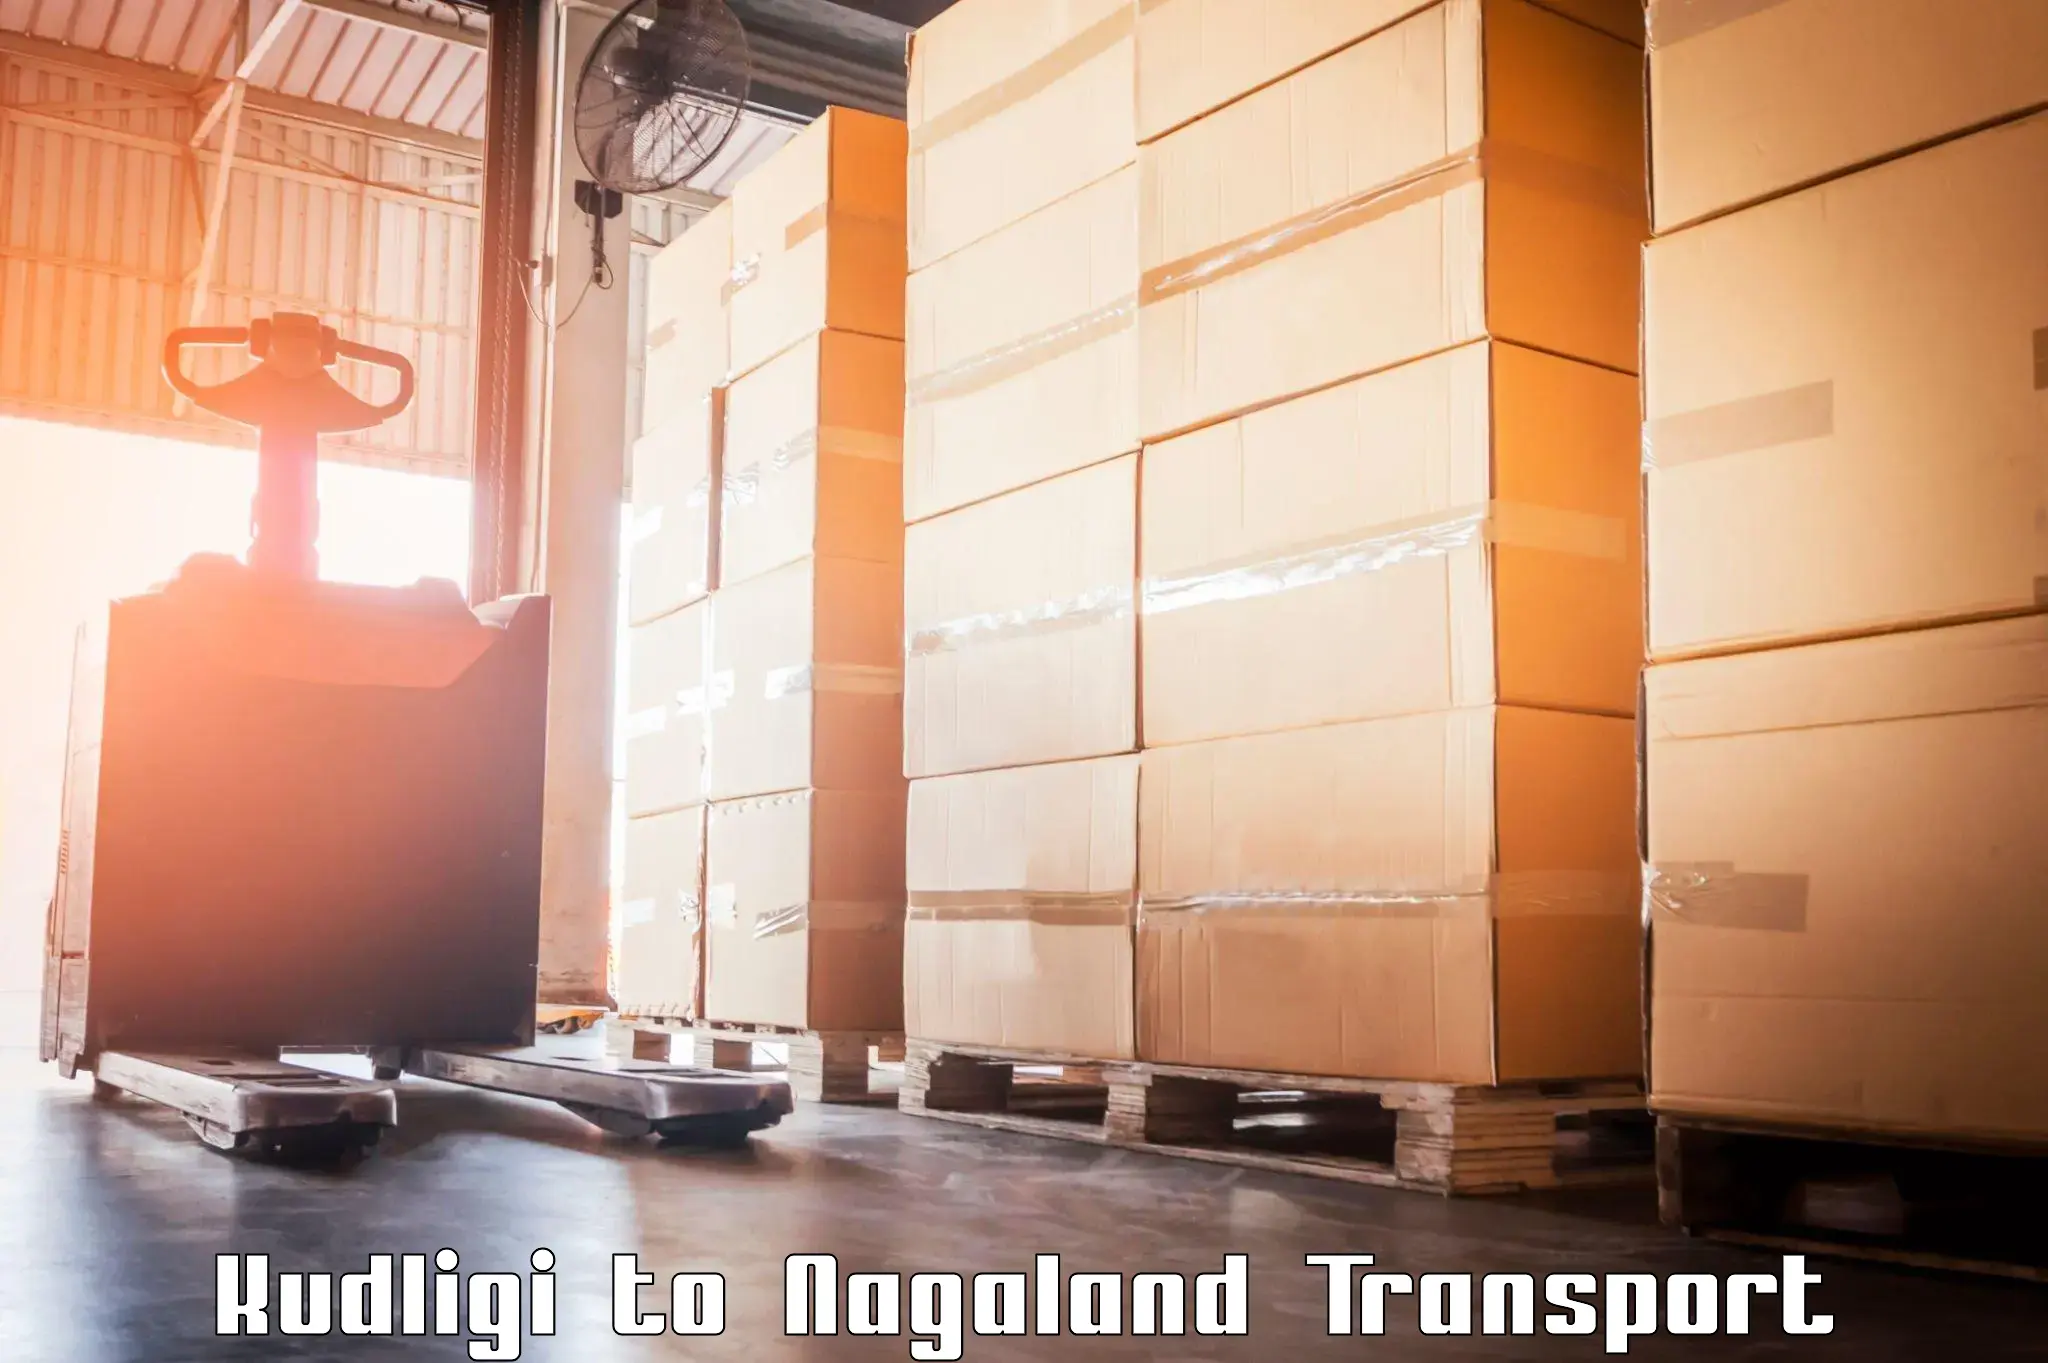 Cargo train transport services Kudligi to Longleng